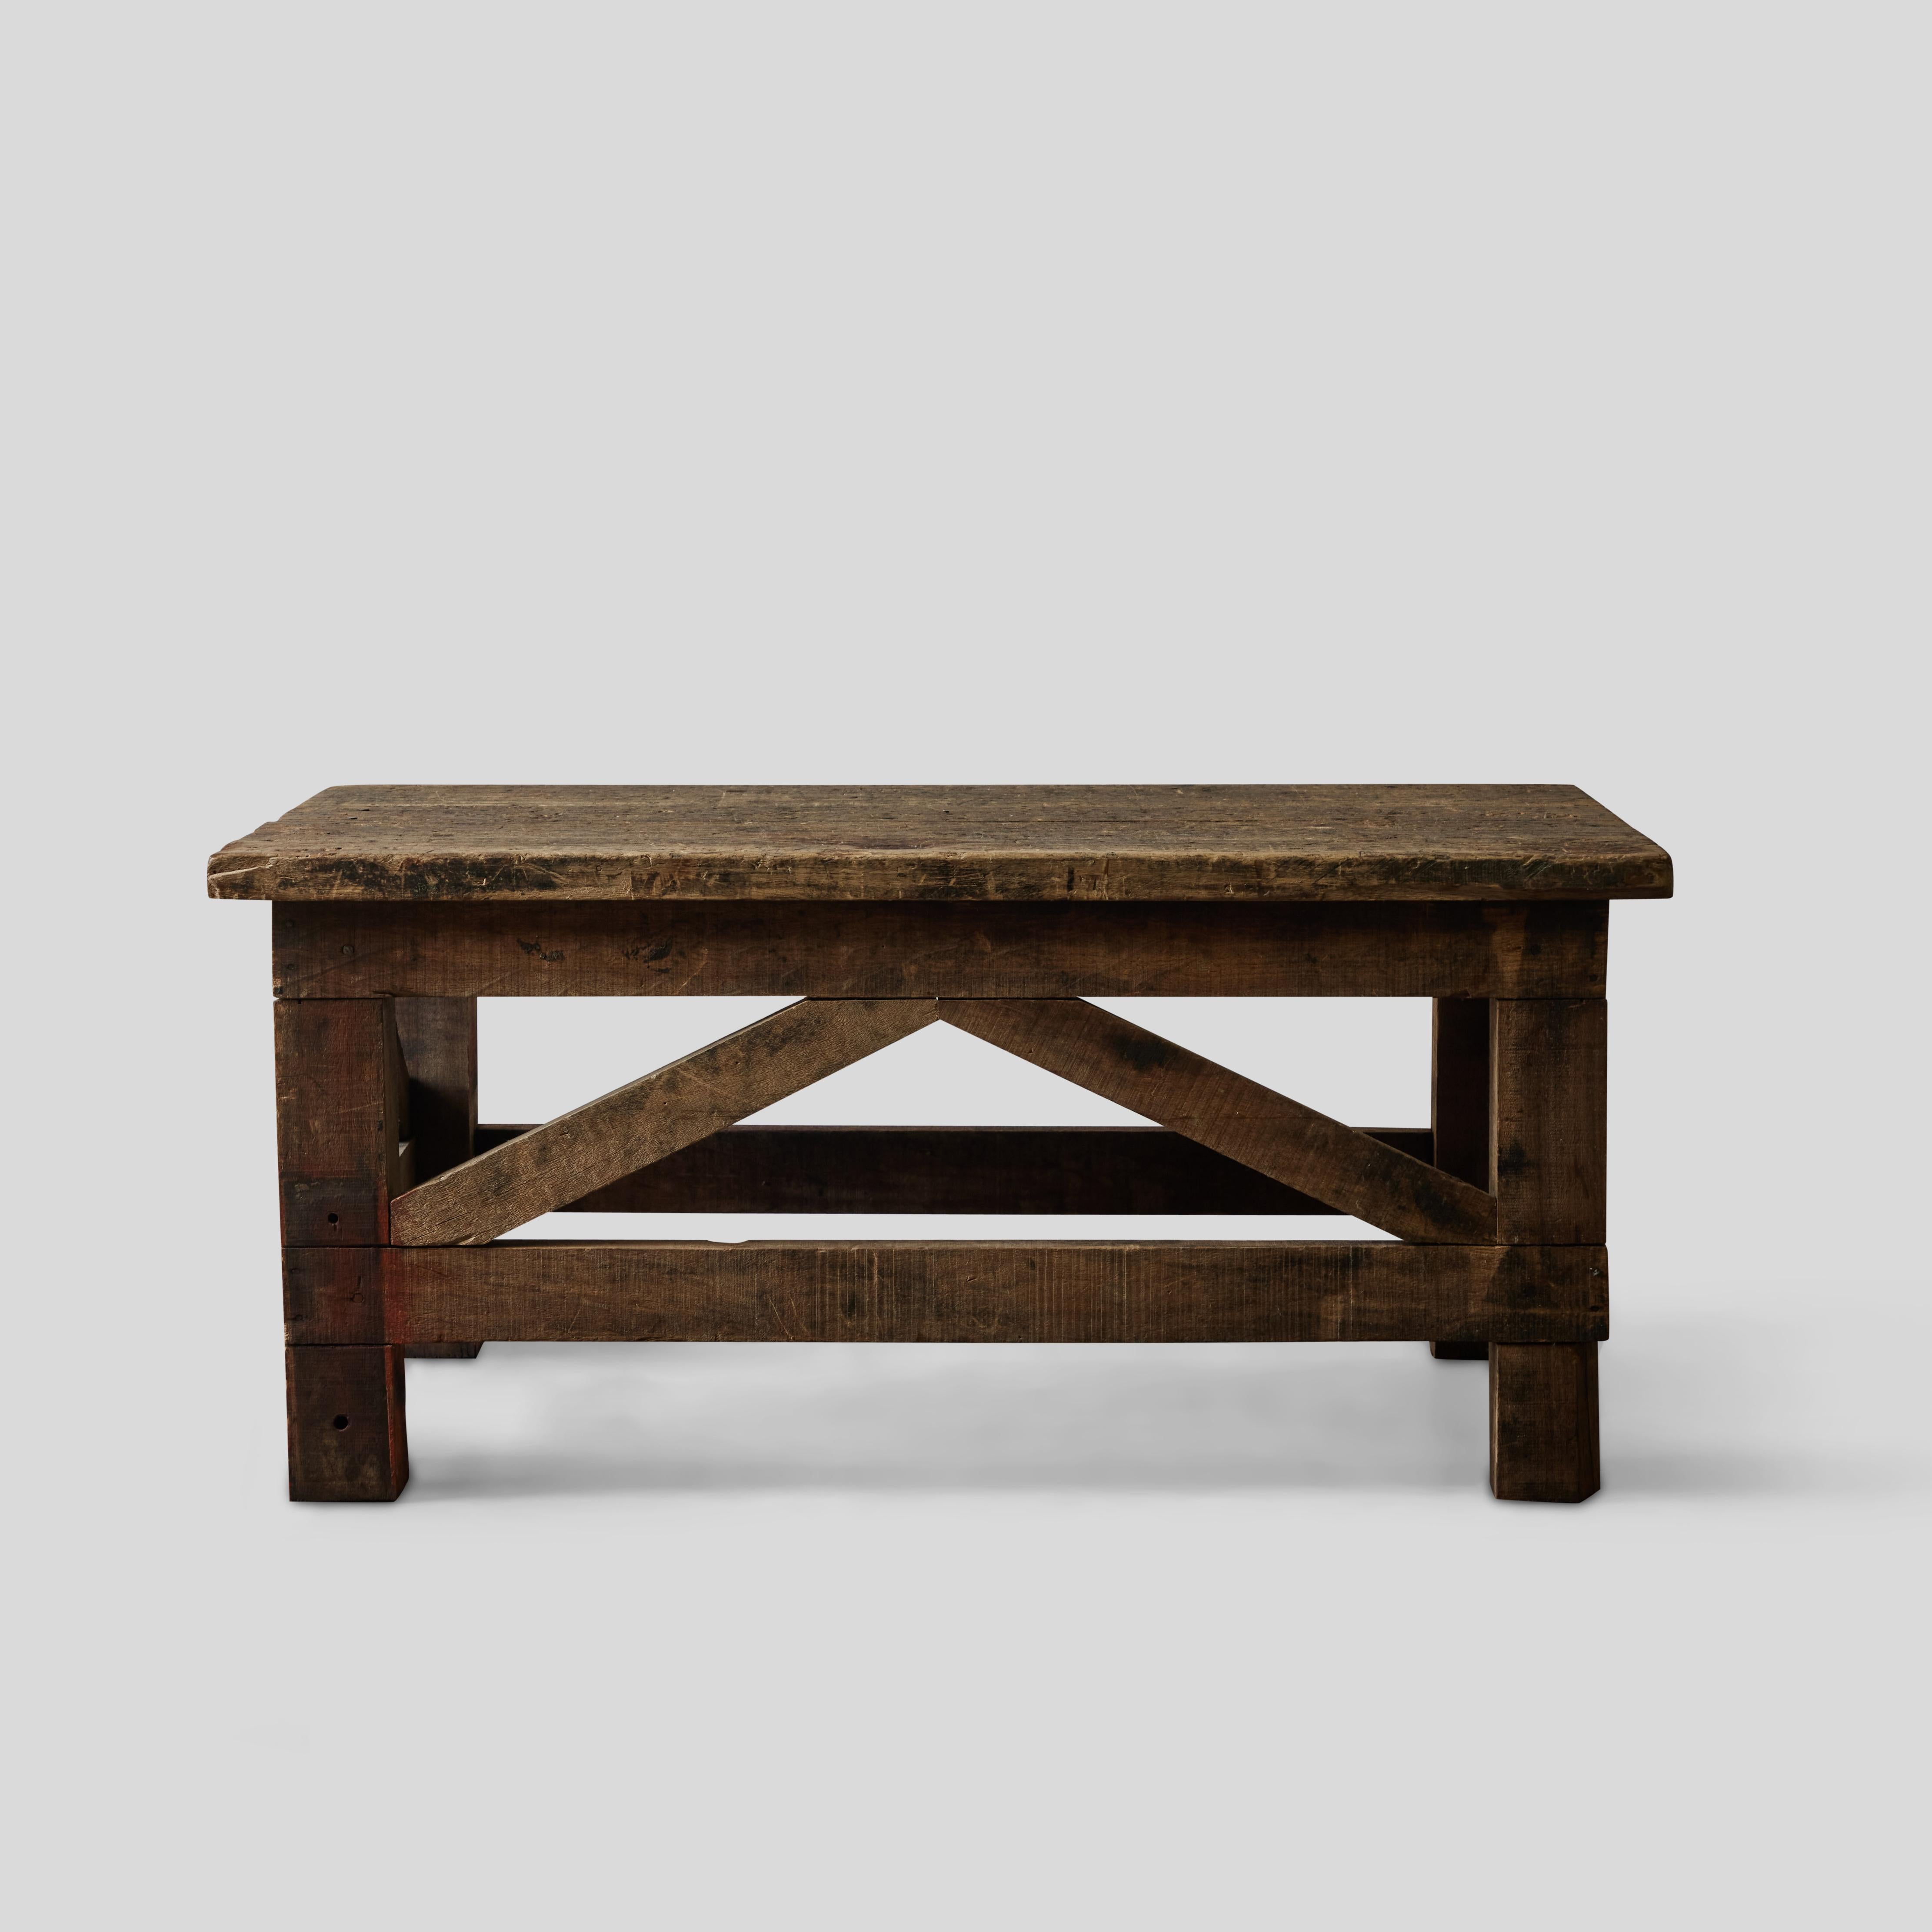 Table basse en bois rustique française des années 1860. Extrêmement polyvalente, cette pièce du XIXe siècle apporte un air de simplicité bucolique et usée à tout espace. Un léger coup de peinture rouge sur la longueur du revêtement vertical de la